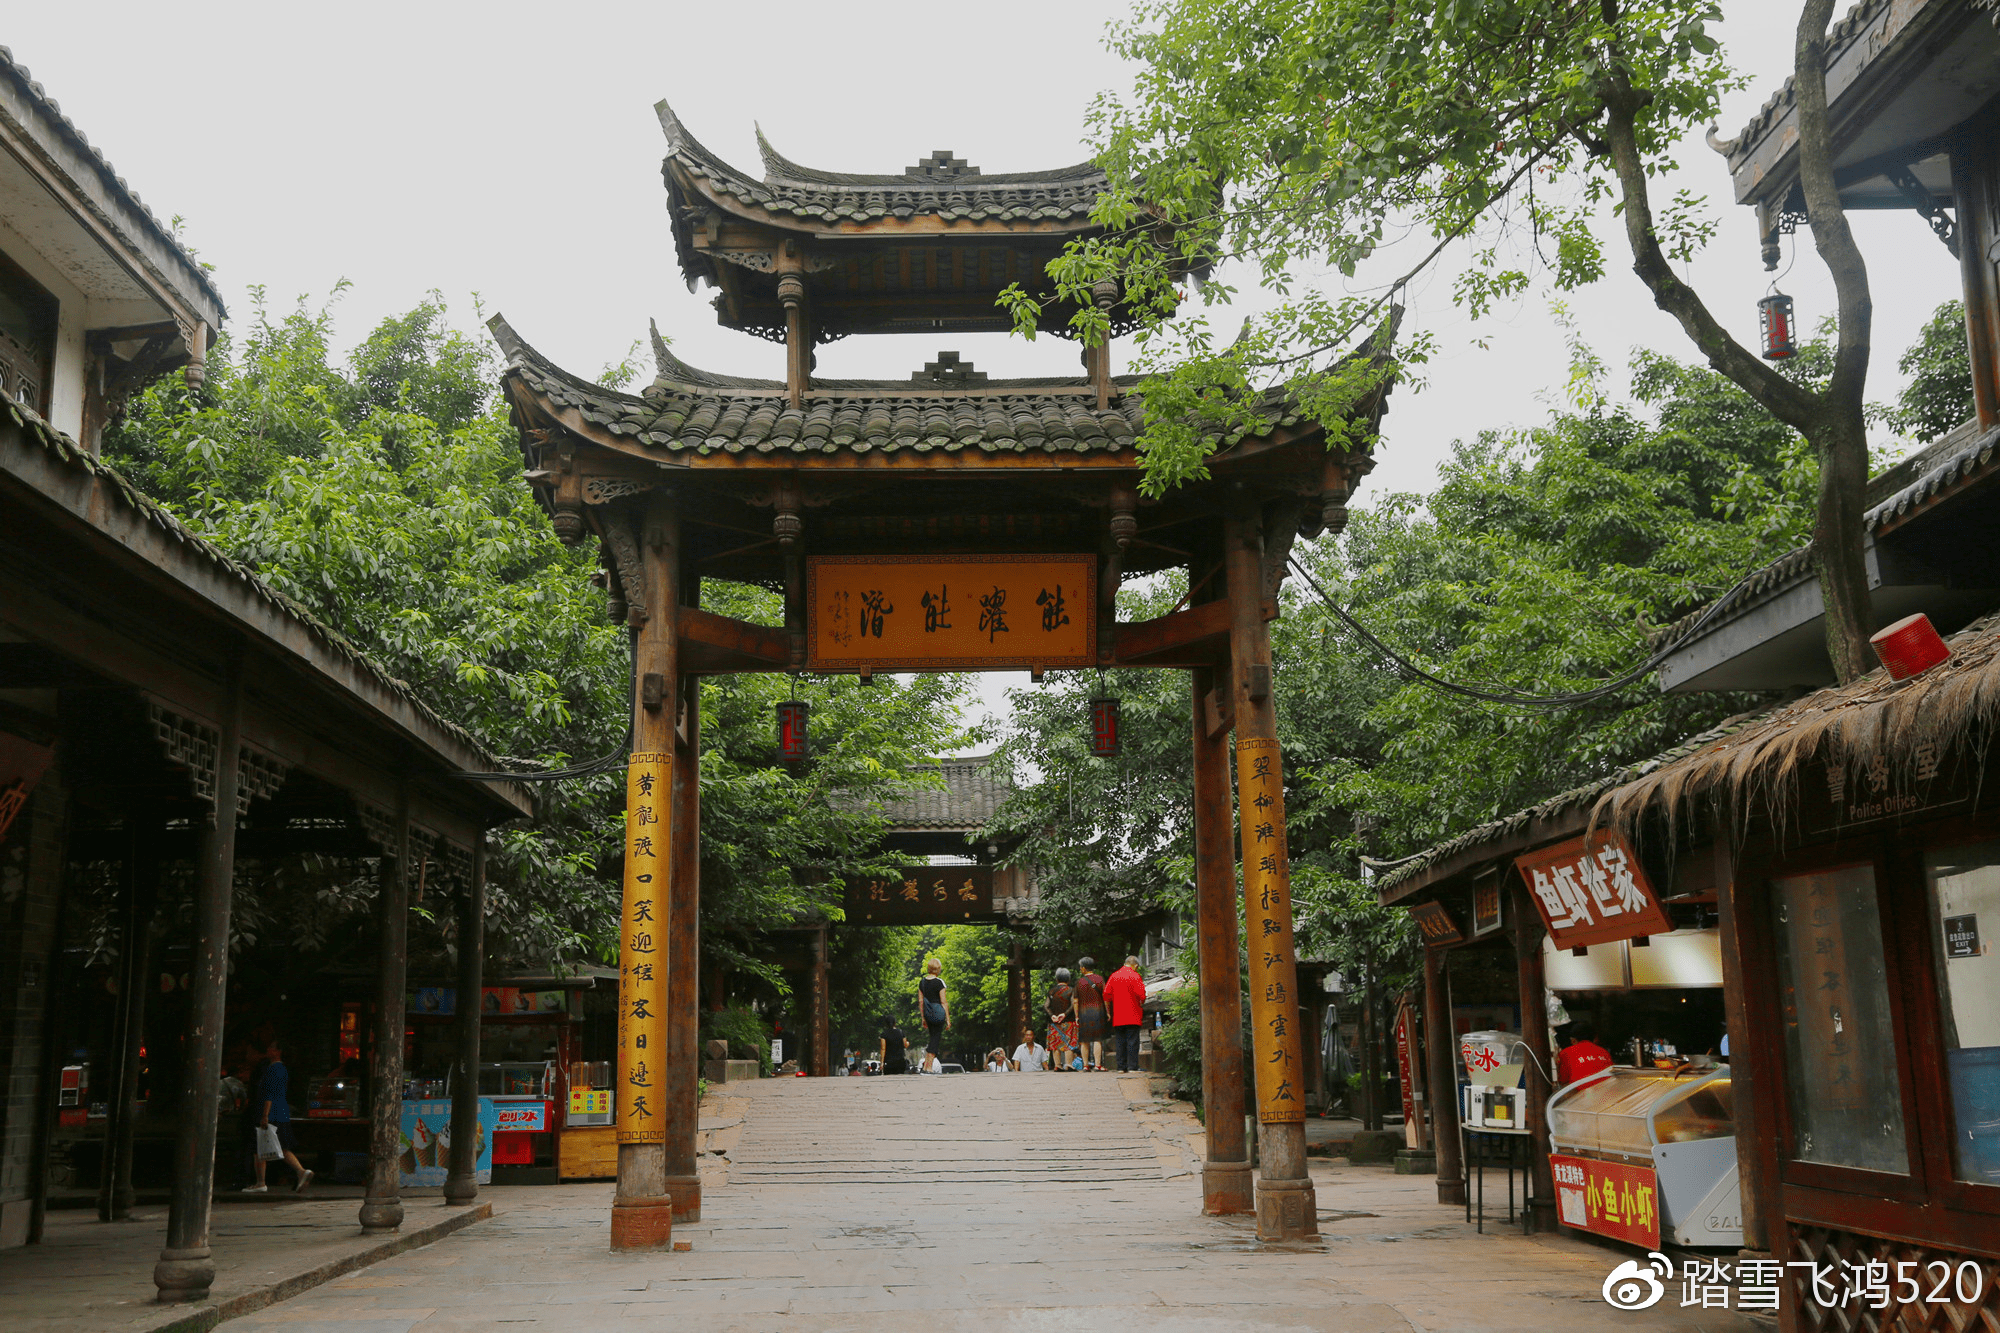 原创三国文化圈的一角,1700多年的水乡古镇,蜀汉之地吸引了太多三国迷